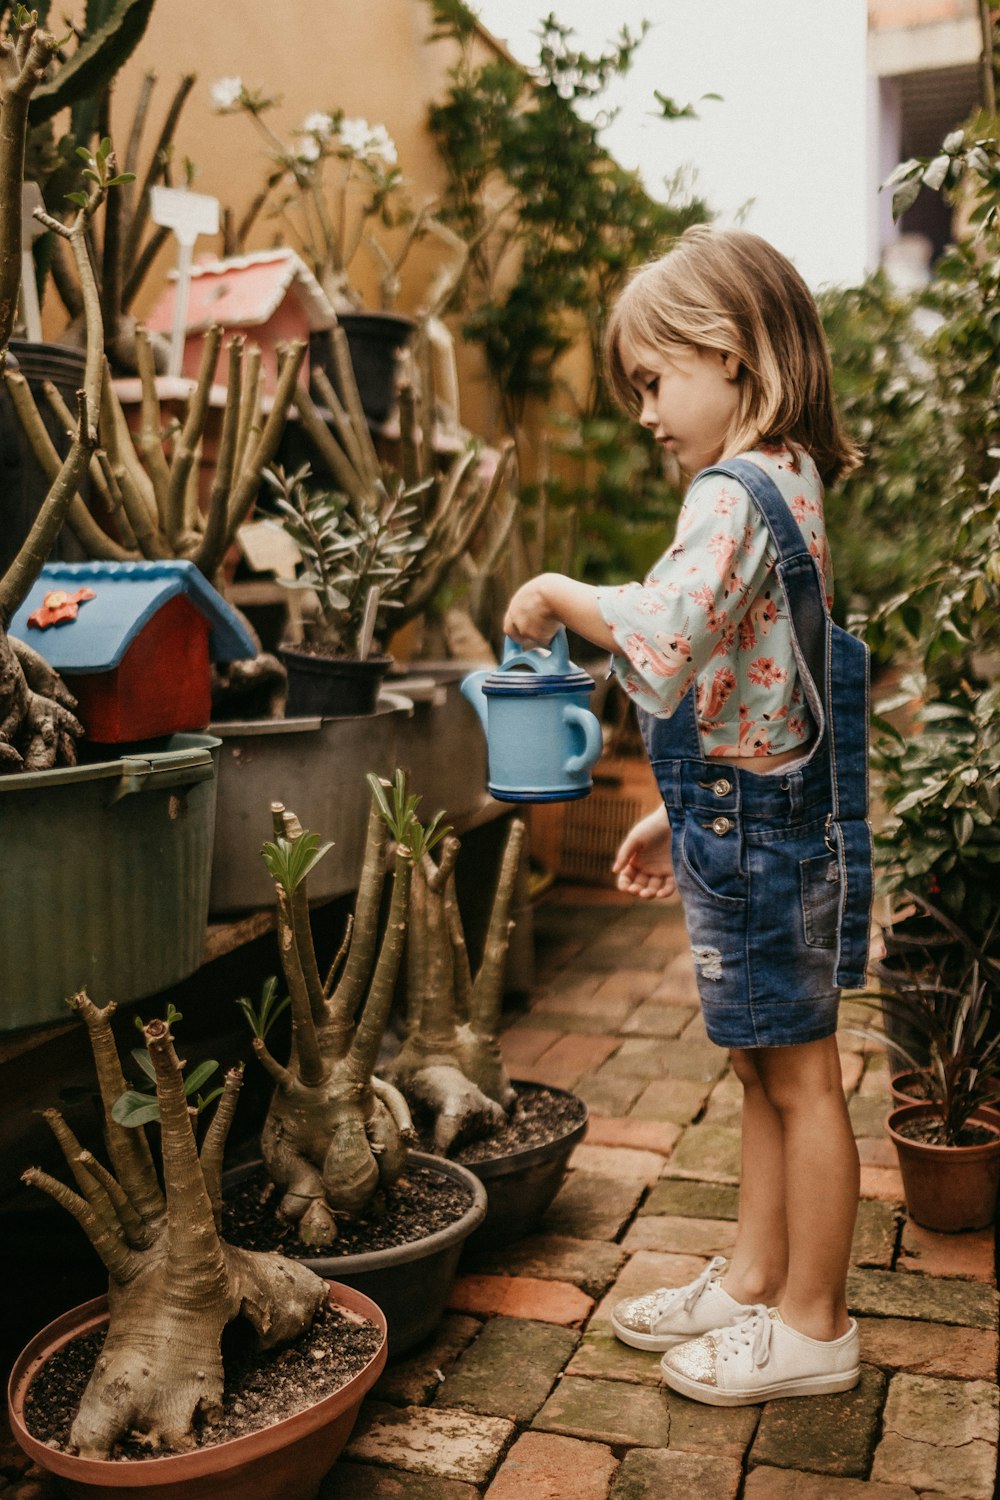 enfant tenant un seau près de la plante pendant la photographie en gros plan de jour